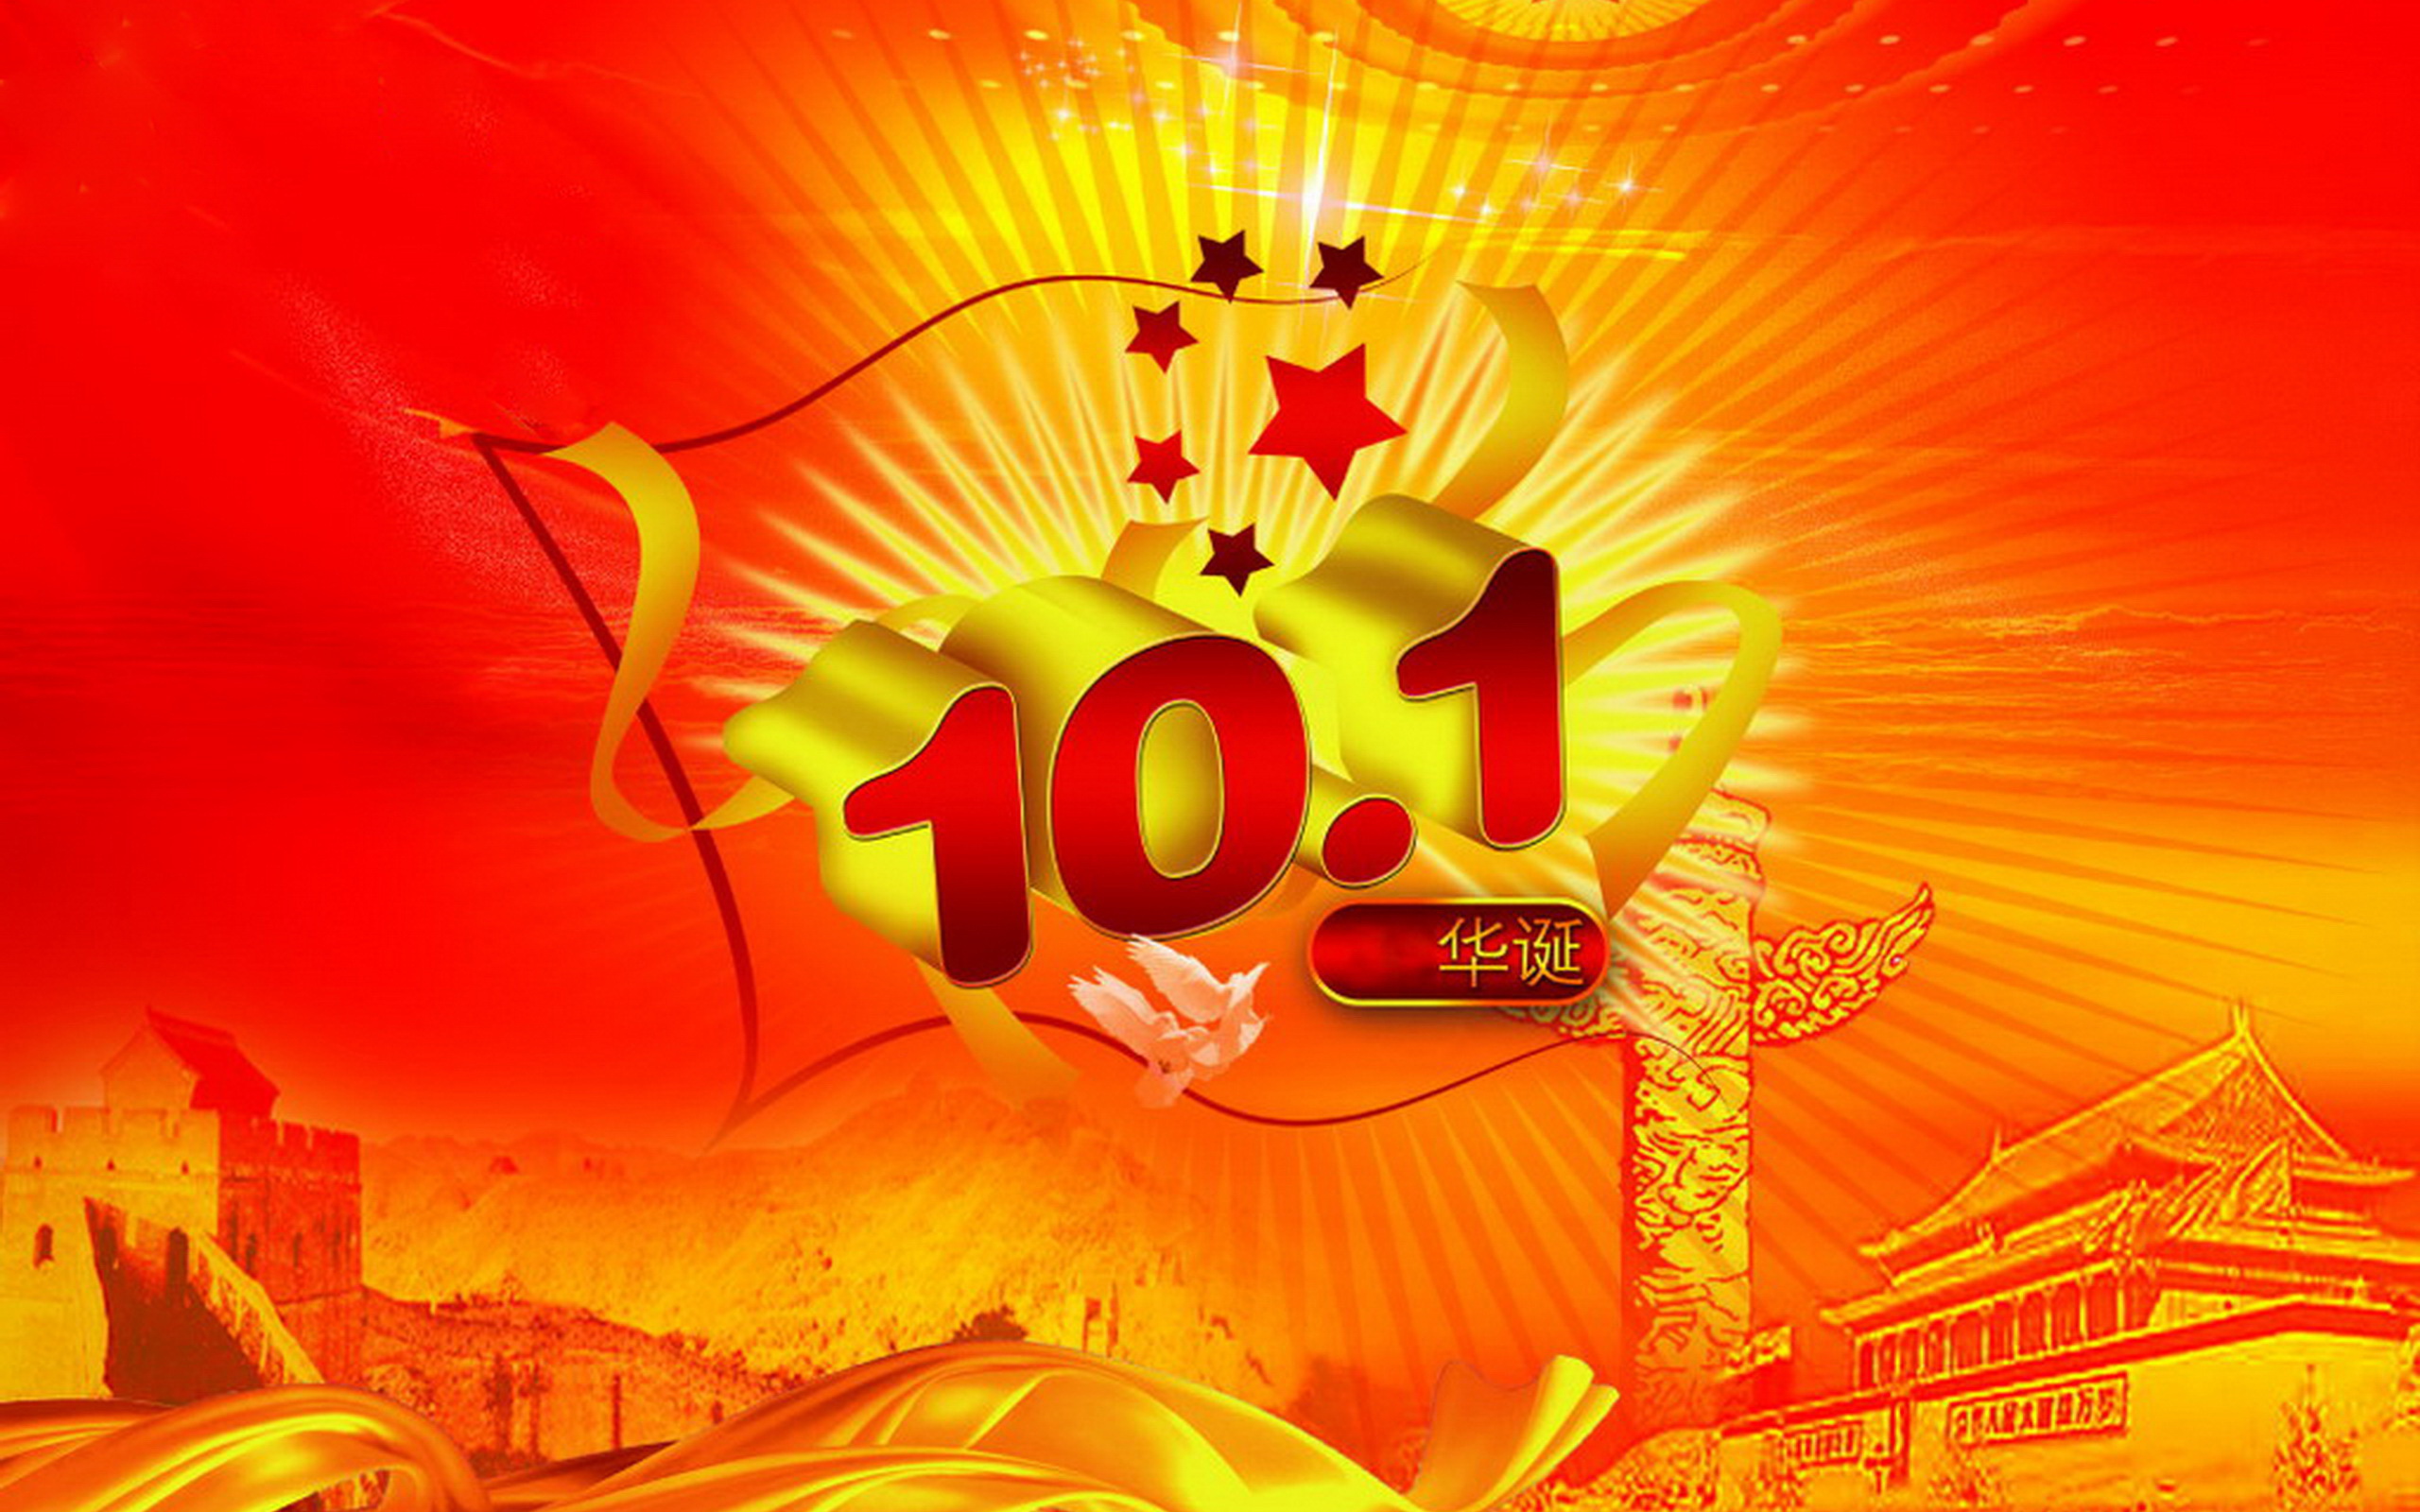 Celebra China día nacional 67 1. Oct-7th.Oct